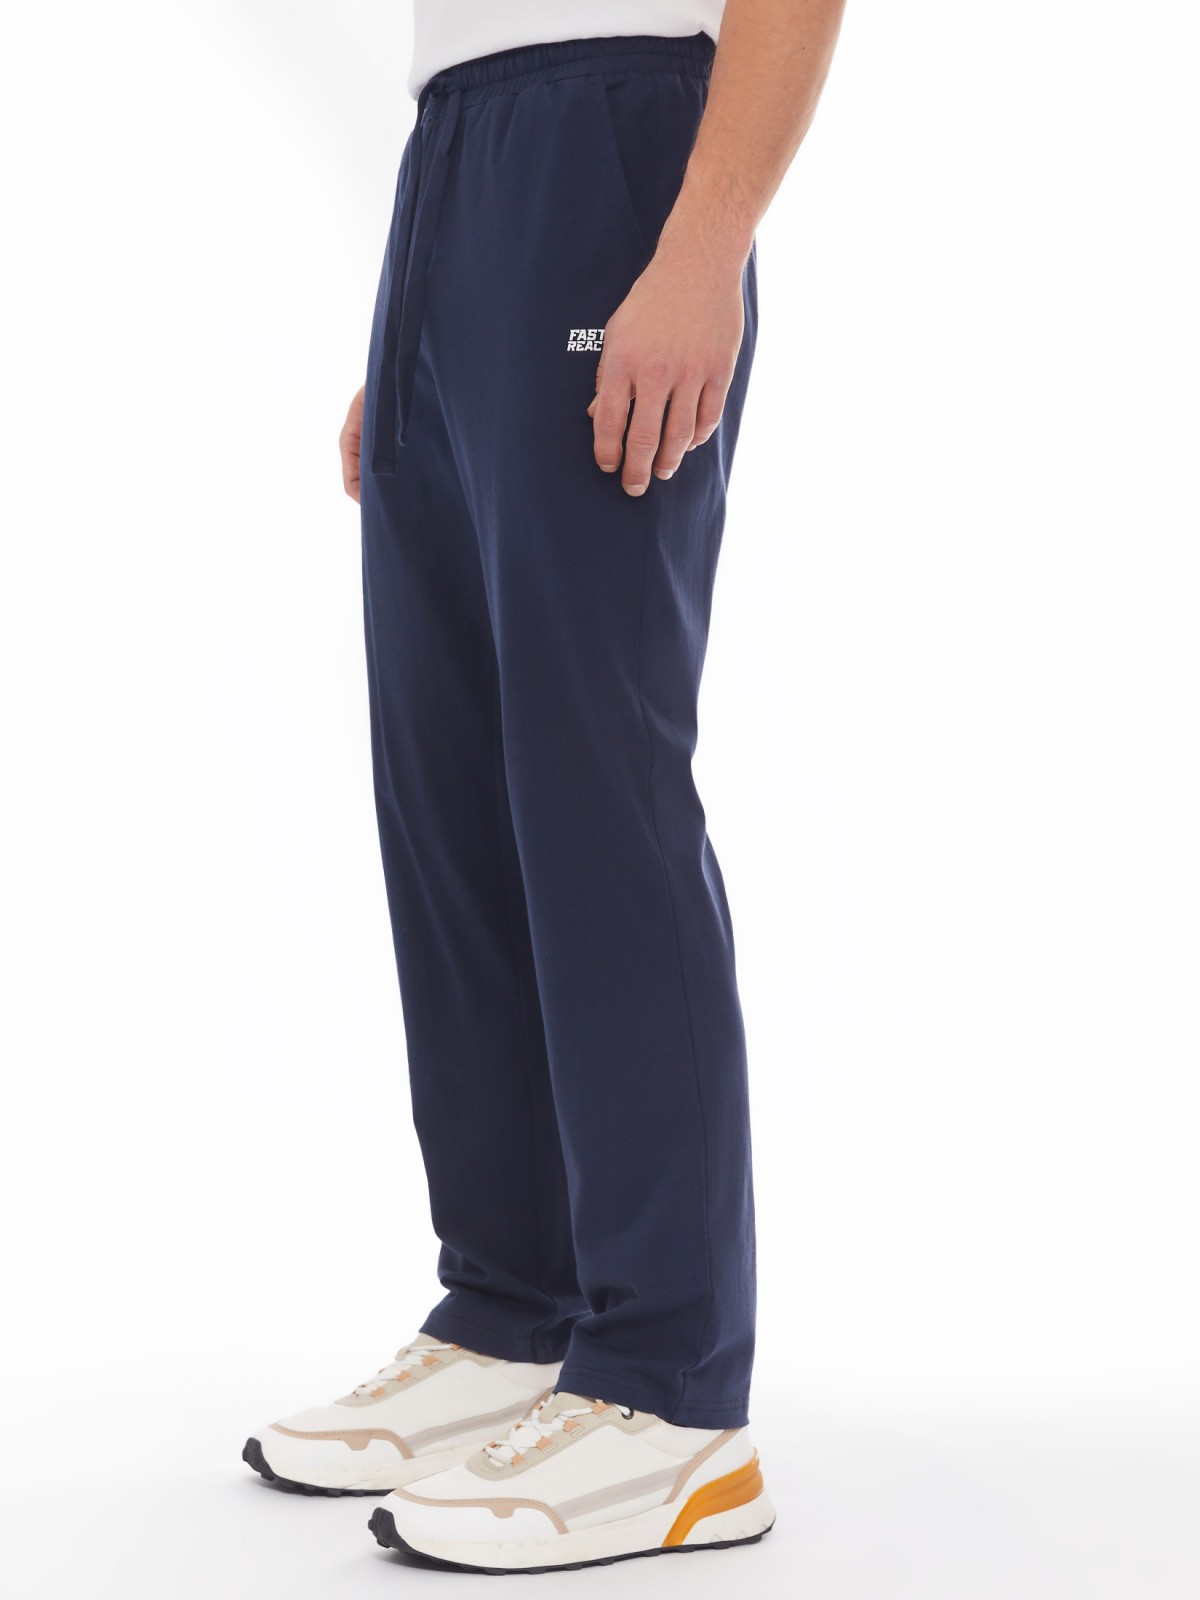 Трикотажные брюки из хлопка в спортивном стиле zolla 014137675012, цвет синий, размер S - фото 5